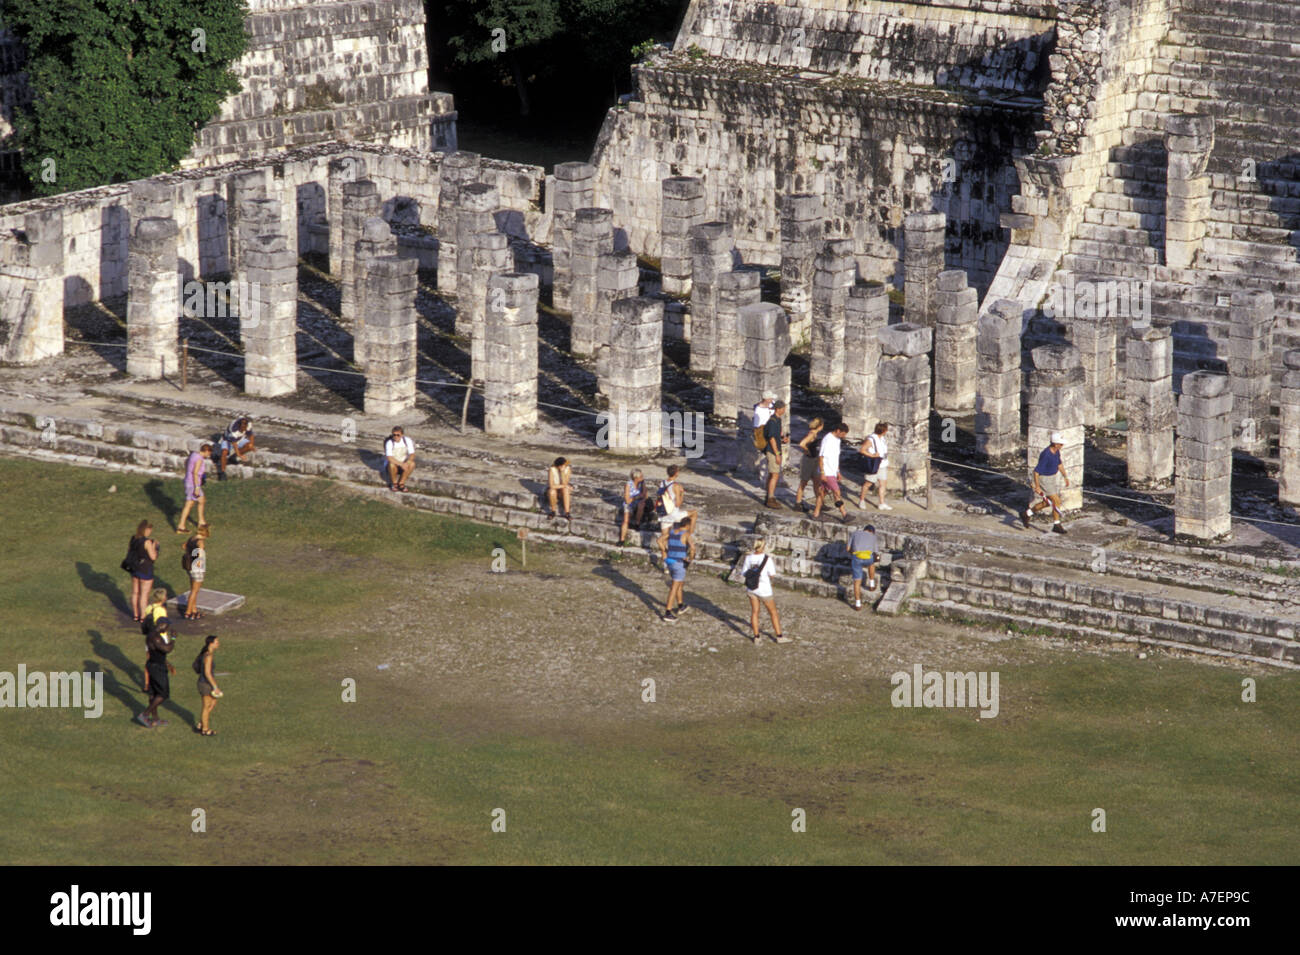 Mexico, Yucatan. Temple of Columns; Chichen Itza ruins, Maya Civilization, 7th-13th Century. Stock Photo